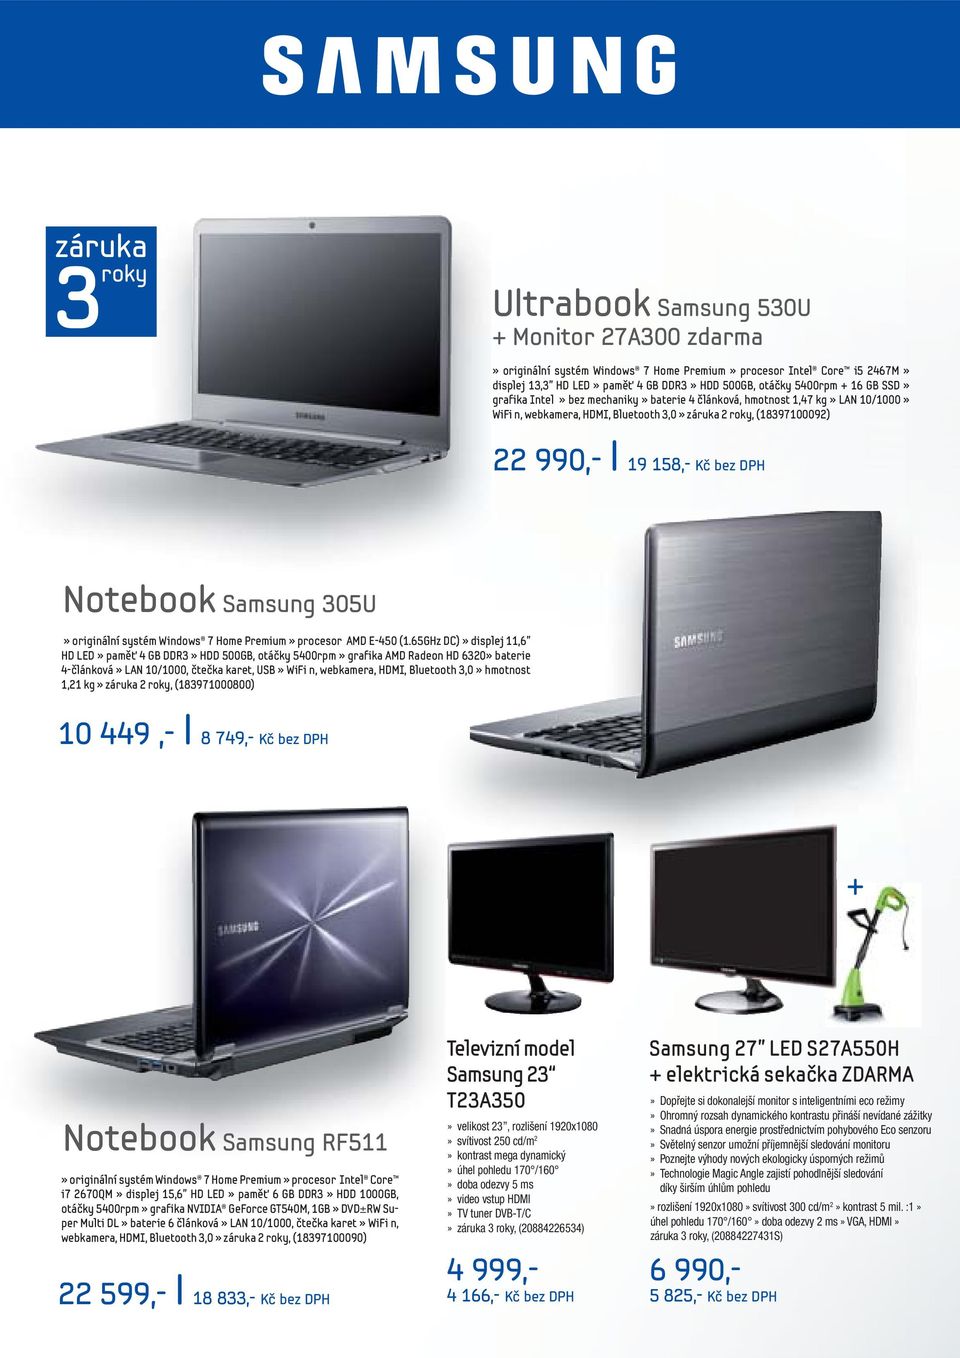 Notebook Samsung 305U» originální systém Windows 7 Home Premium» procesor AMD E-450 (1.